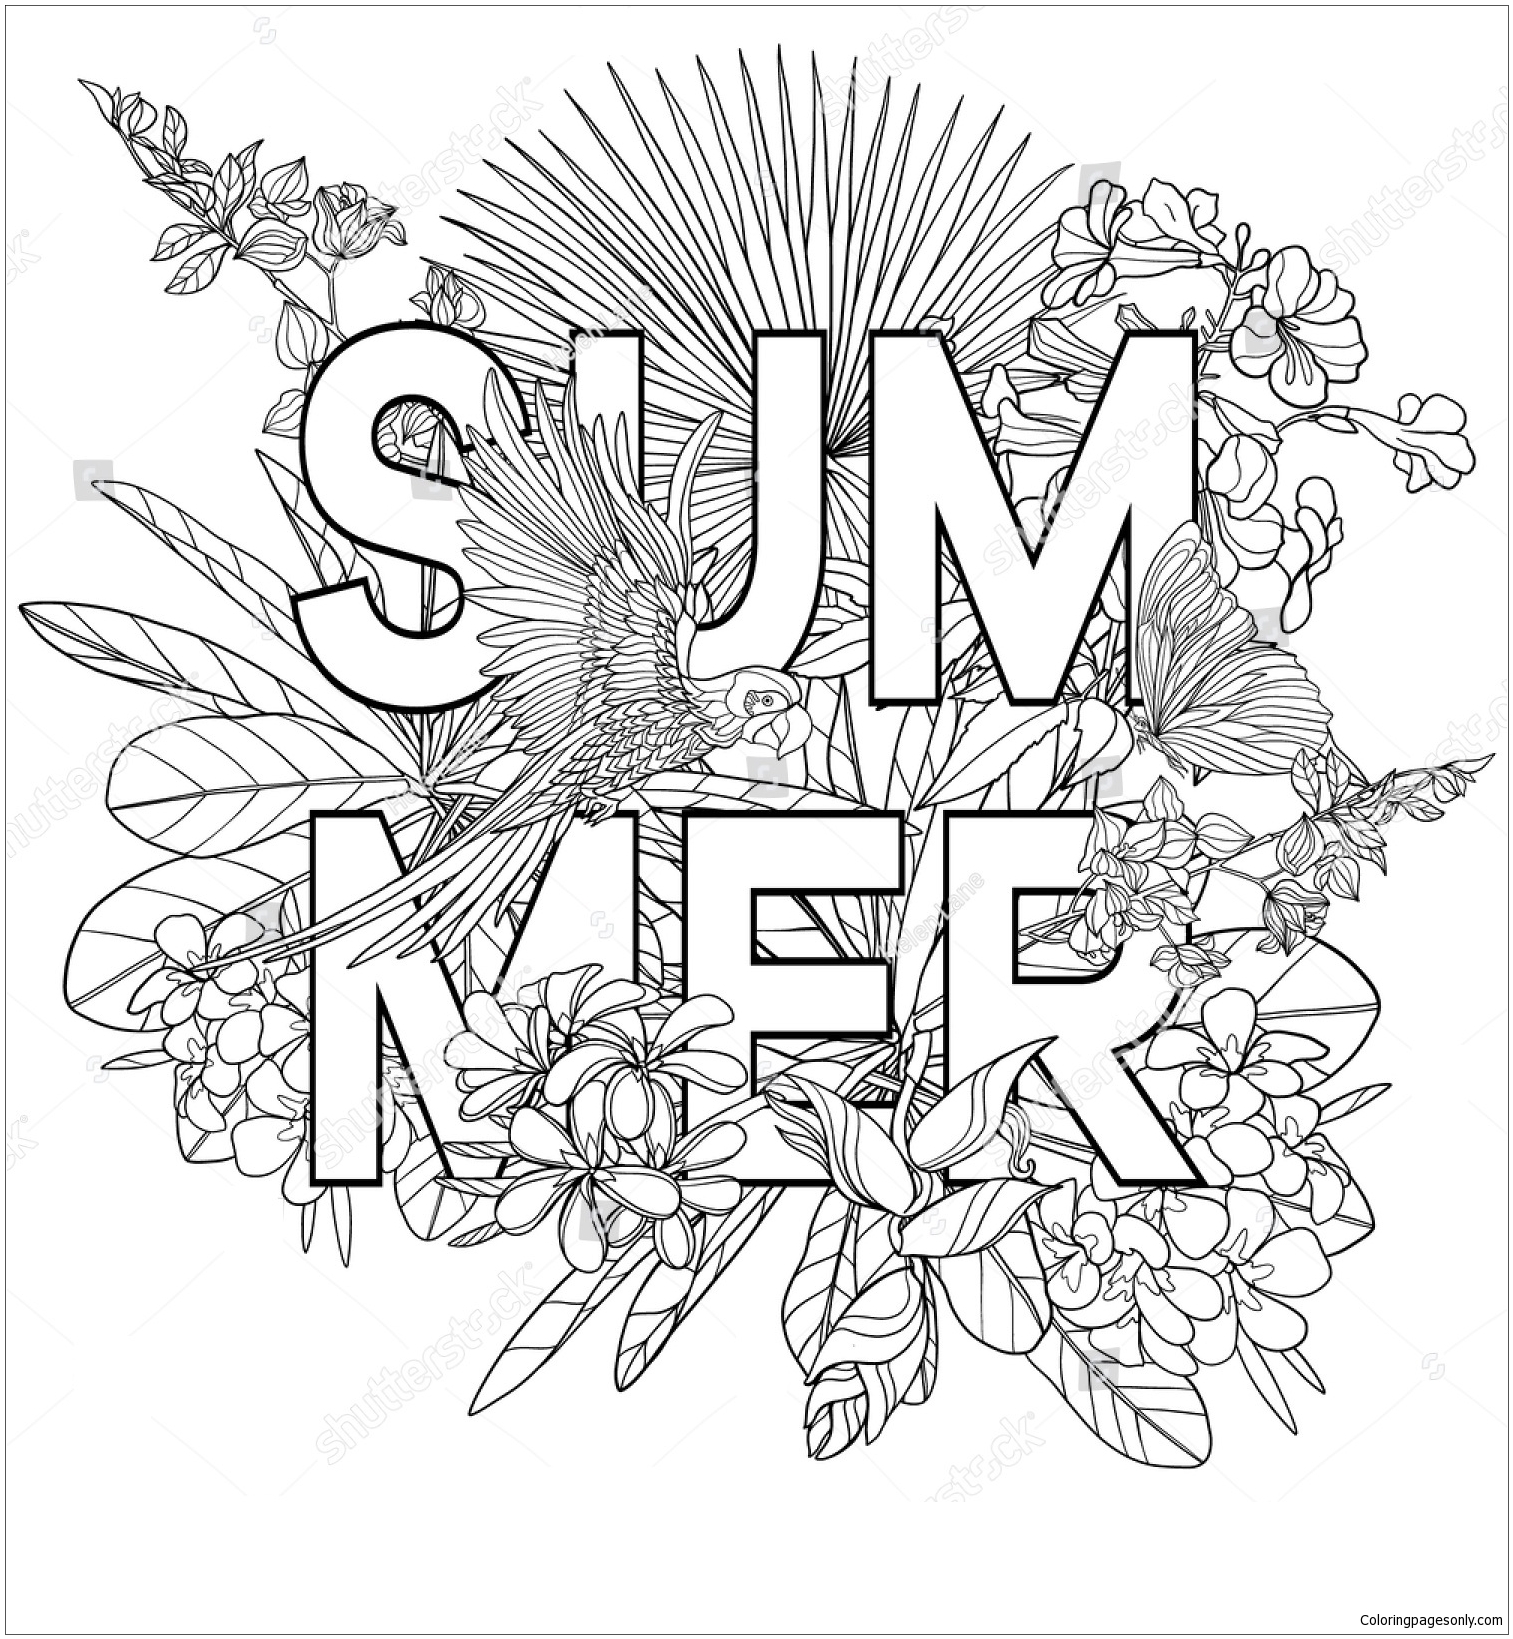 Het woord zomer van zomer